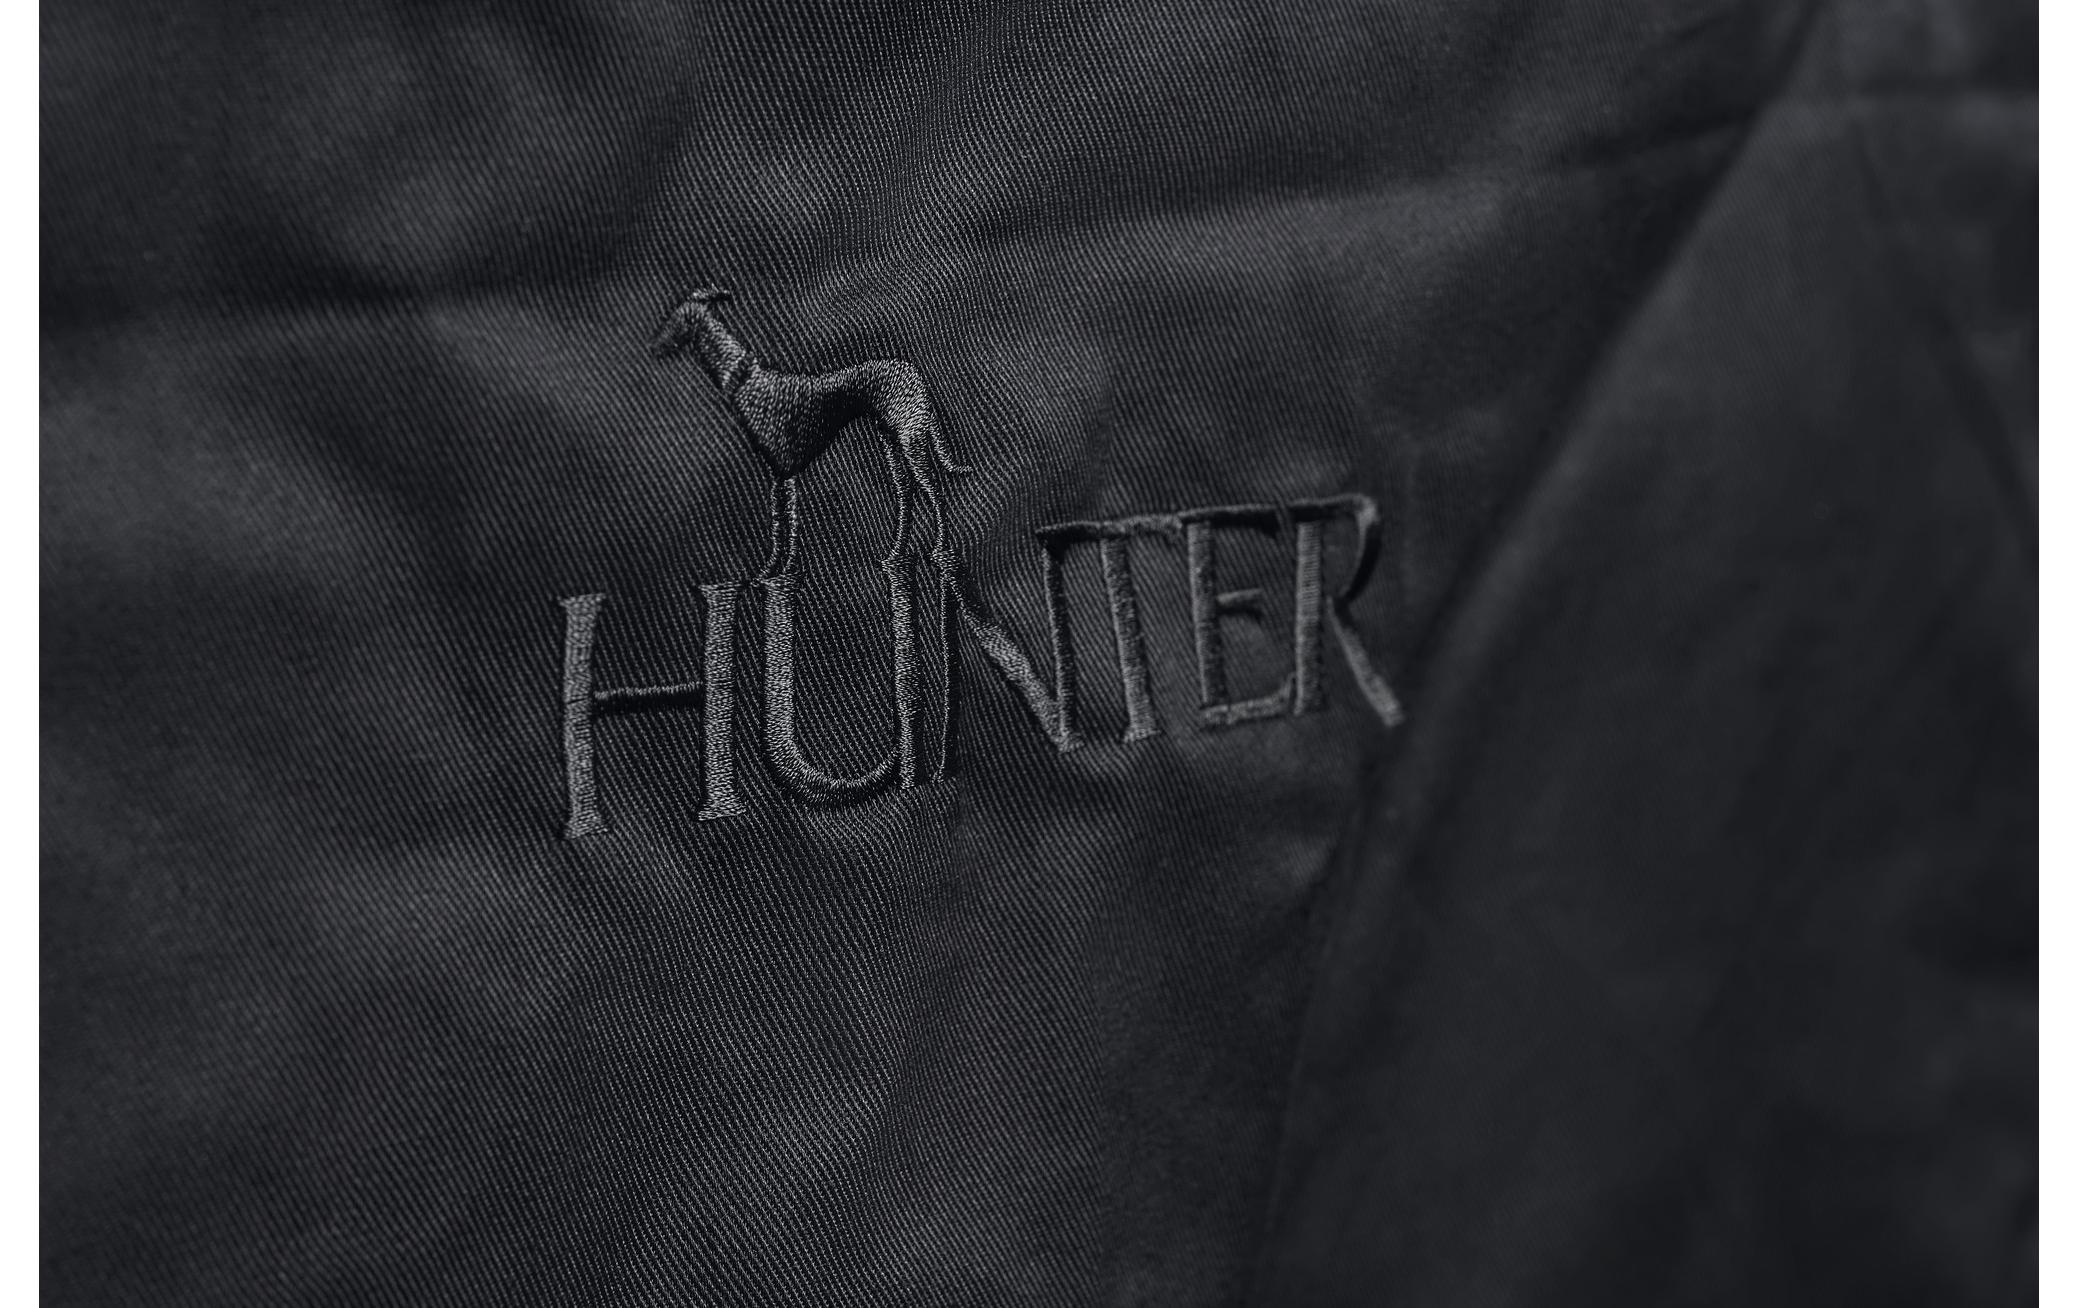 Hunter Kofferraum-Schondecke Hamilton, 100 x 65 cm, Schwarz